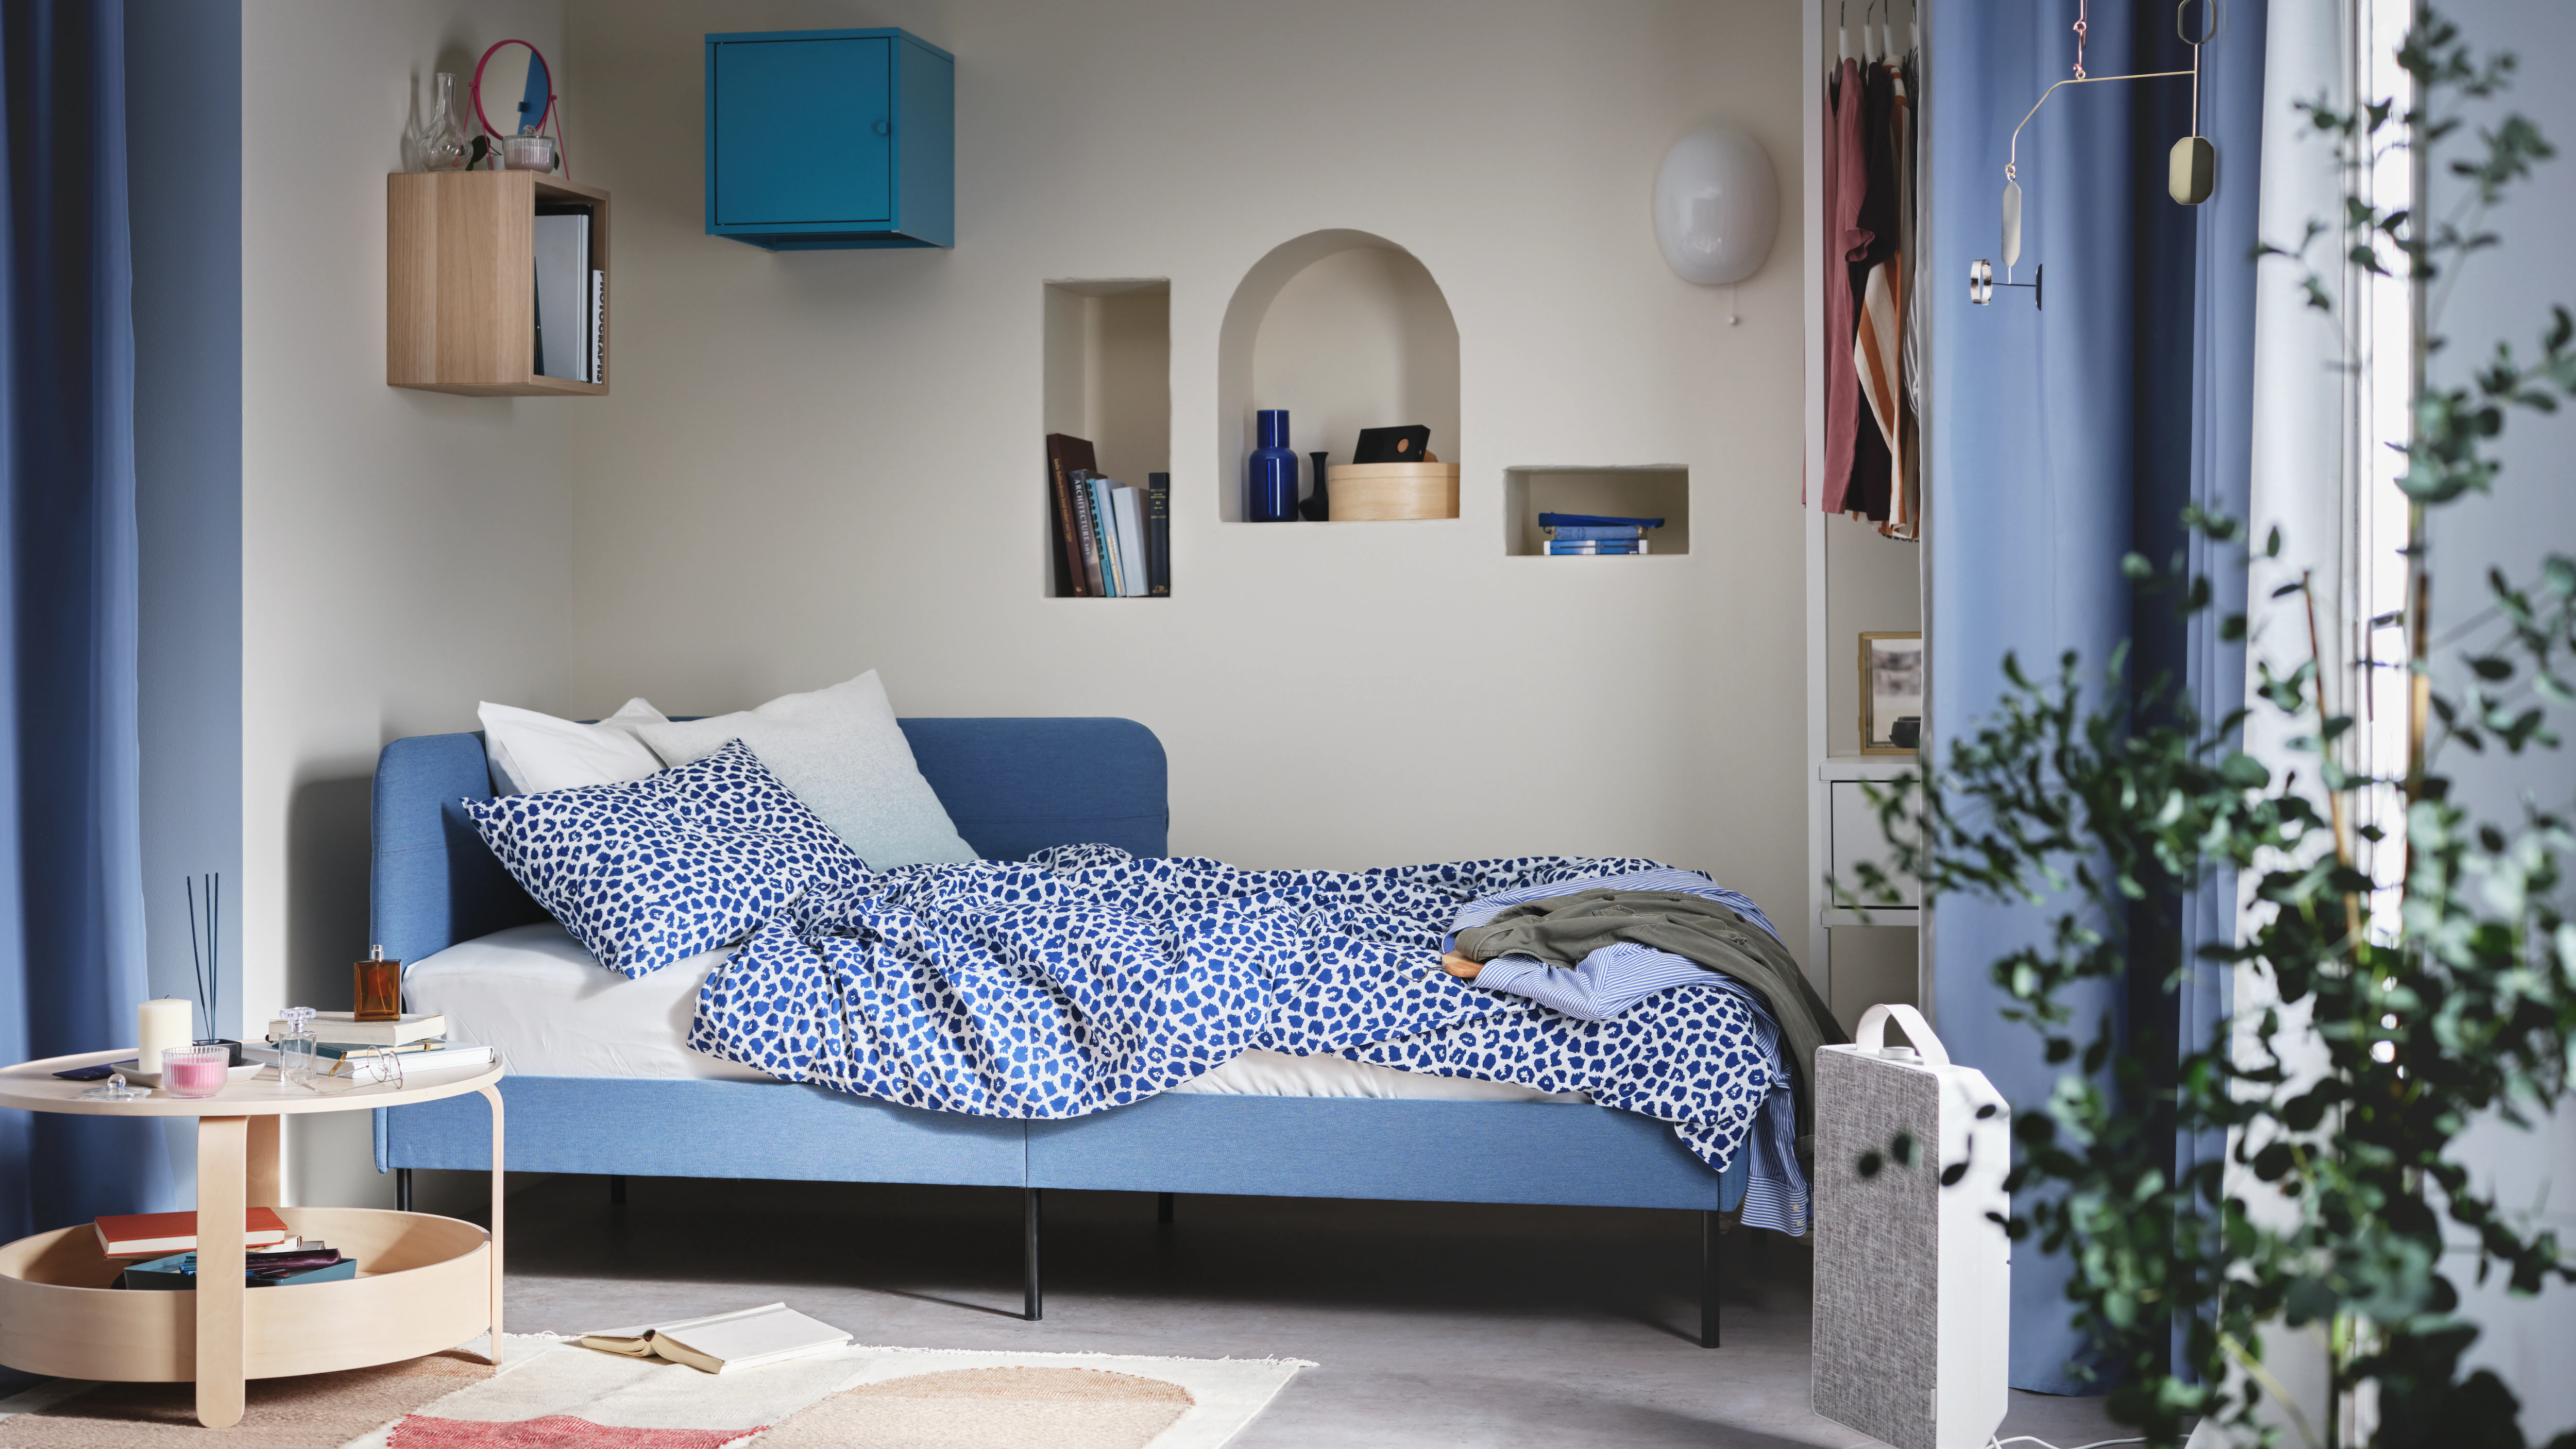 Las 10 novedades más baratas de Ikea para el dormitorio que te harán olvidarte de todas las rebajas deco